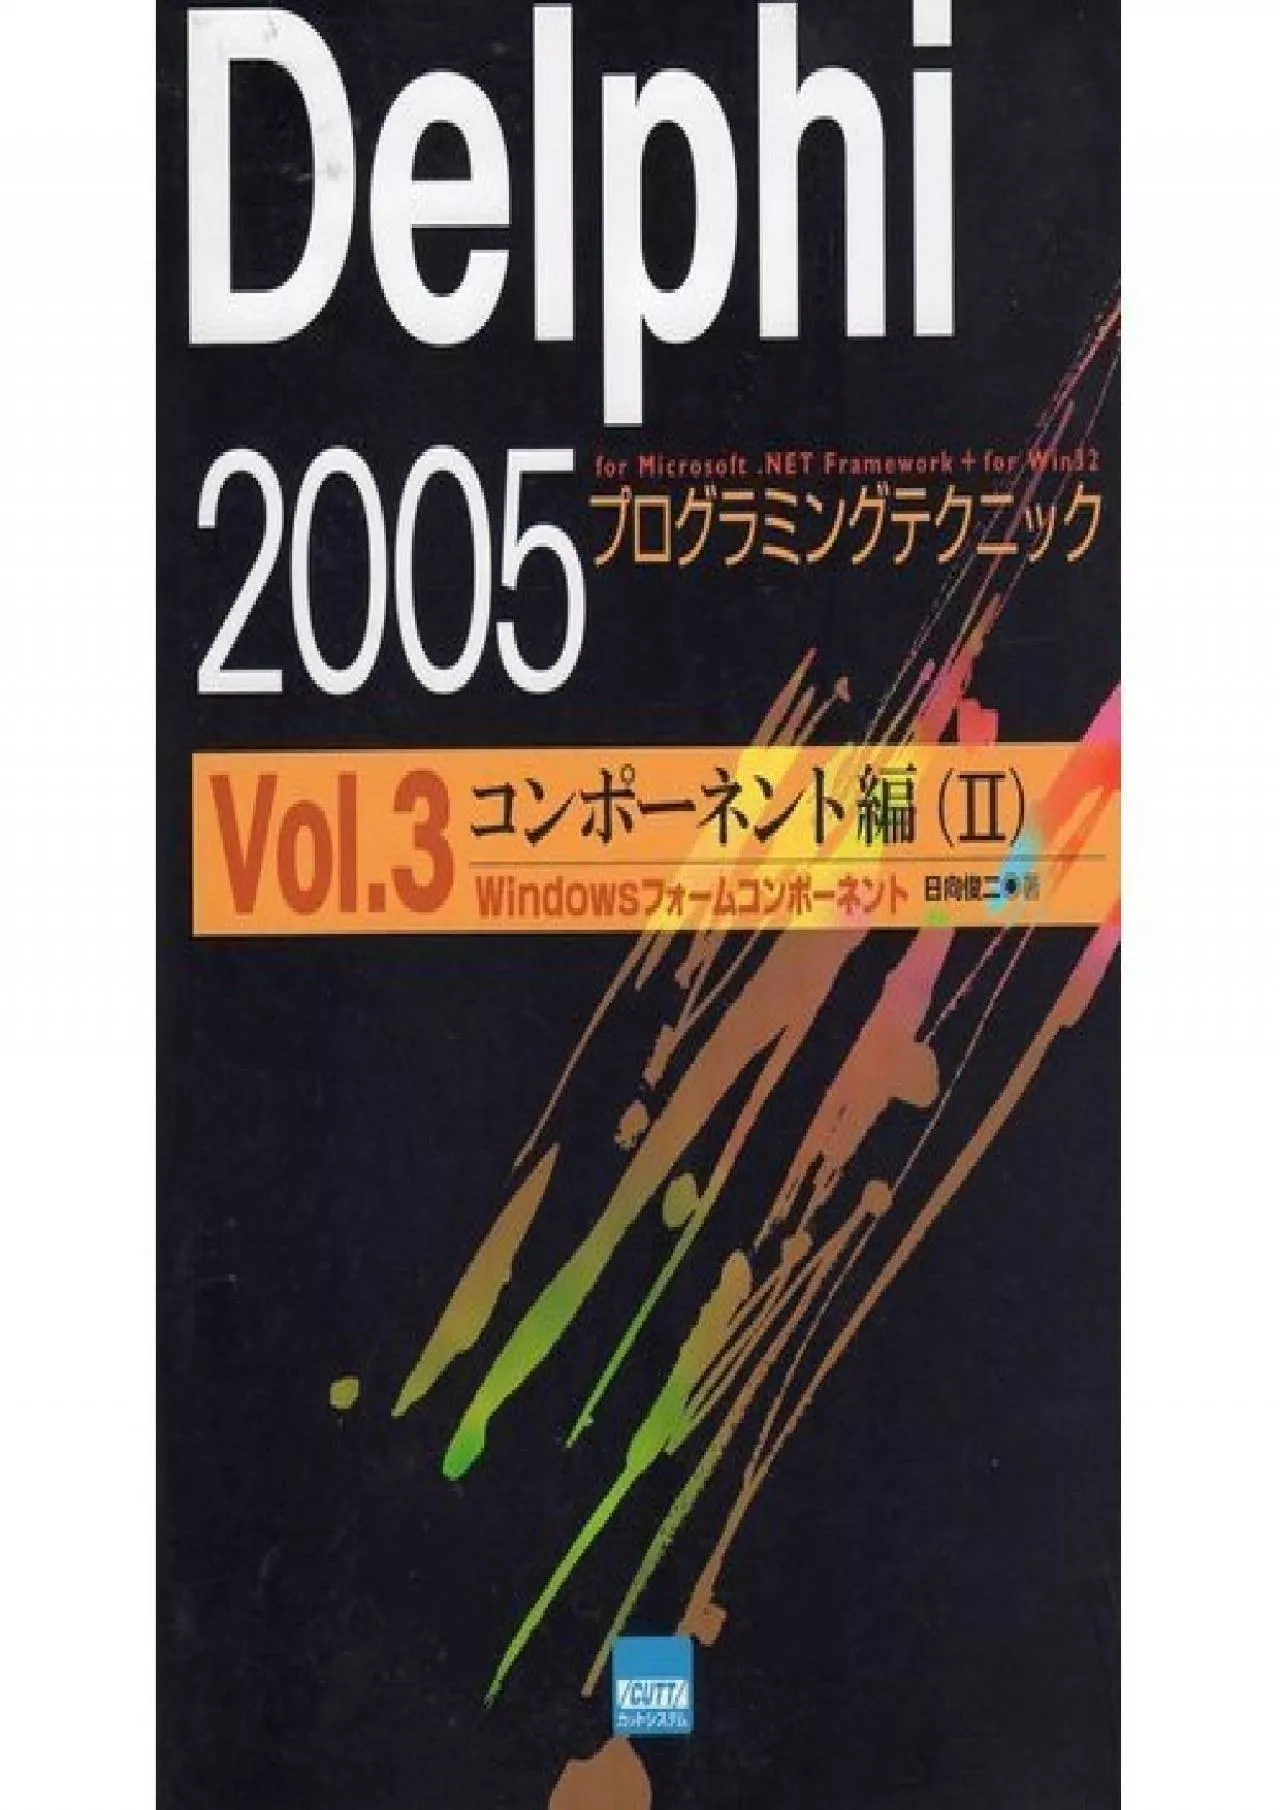 [BEST]-Delphi 2005 Programming Techniques-For Microsoft.NET Framework + for Win32 (Vol.3)